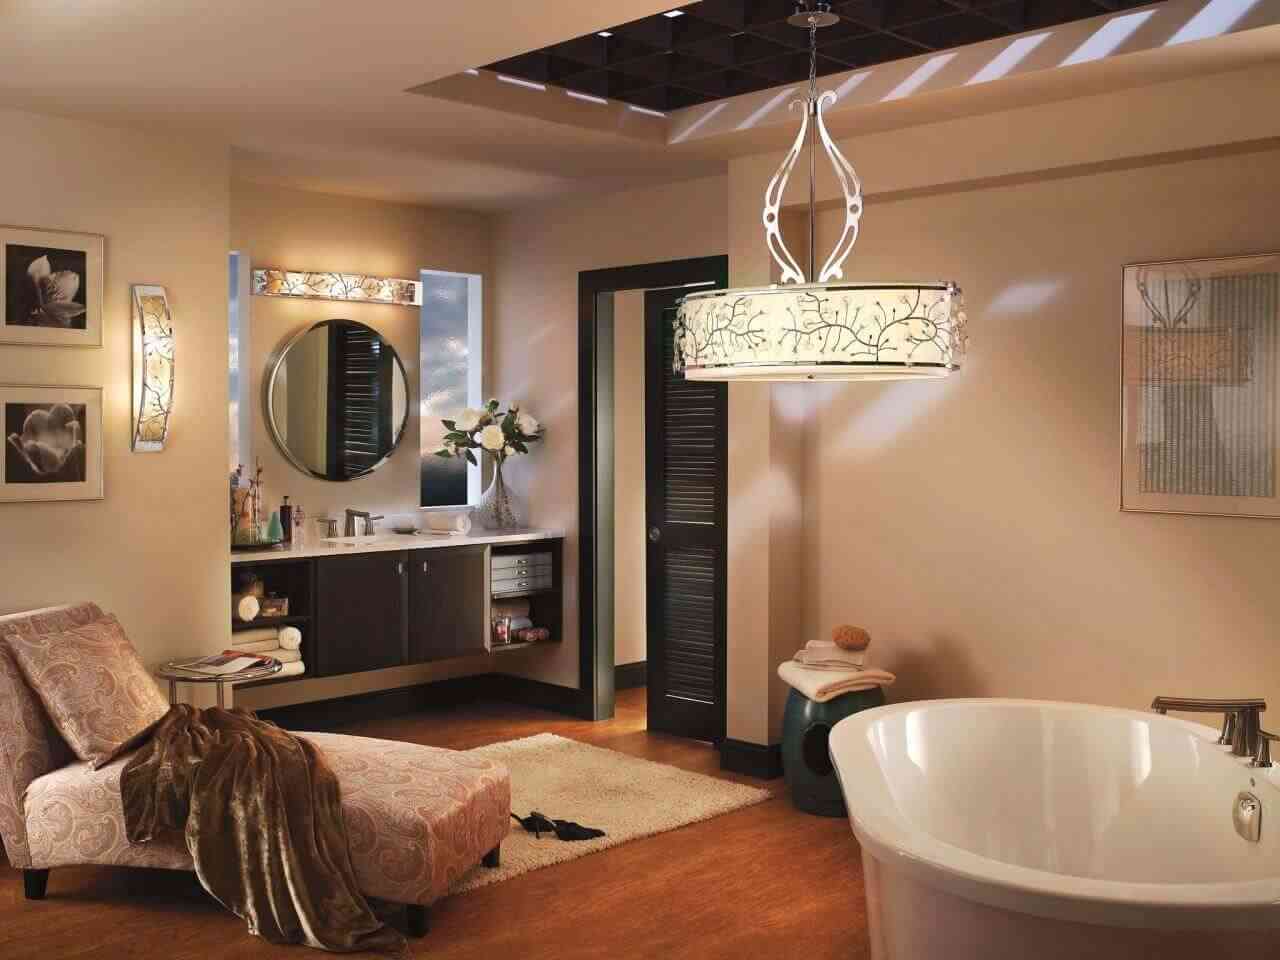 Indoor - outdoor Bathroom Lighting Ideas